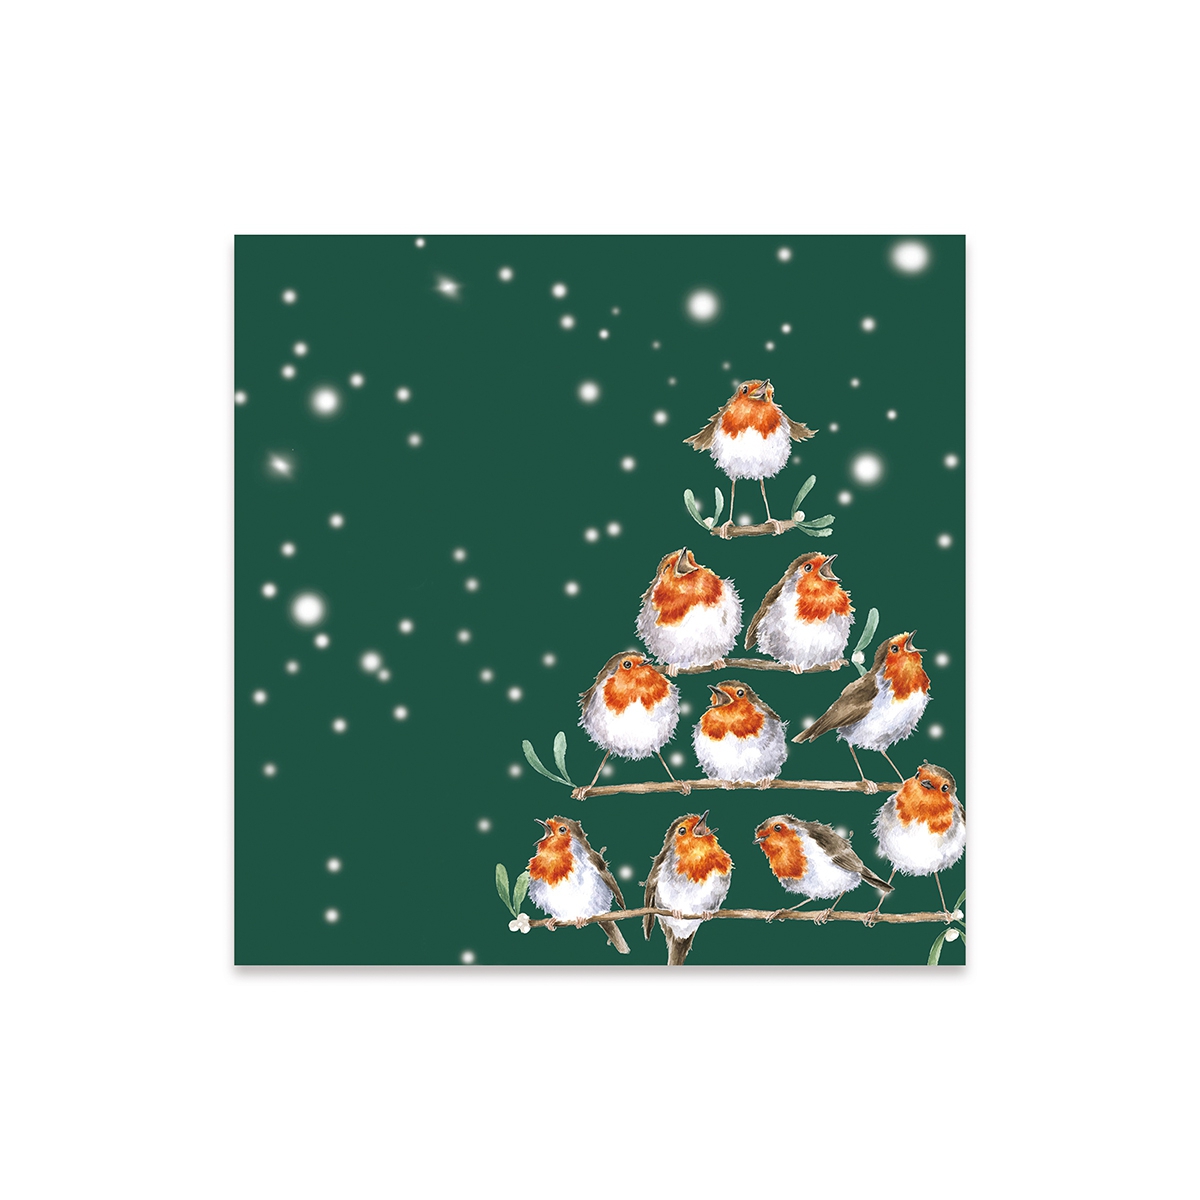 Vögel Weihnachtsserviette "Rockin' Robins" cocktail size 24 x 24cm Wrendale Designs